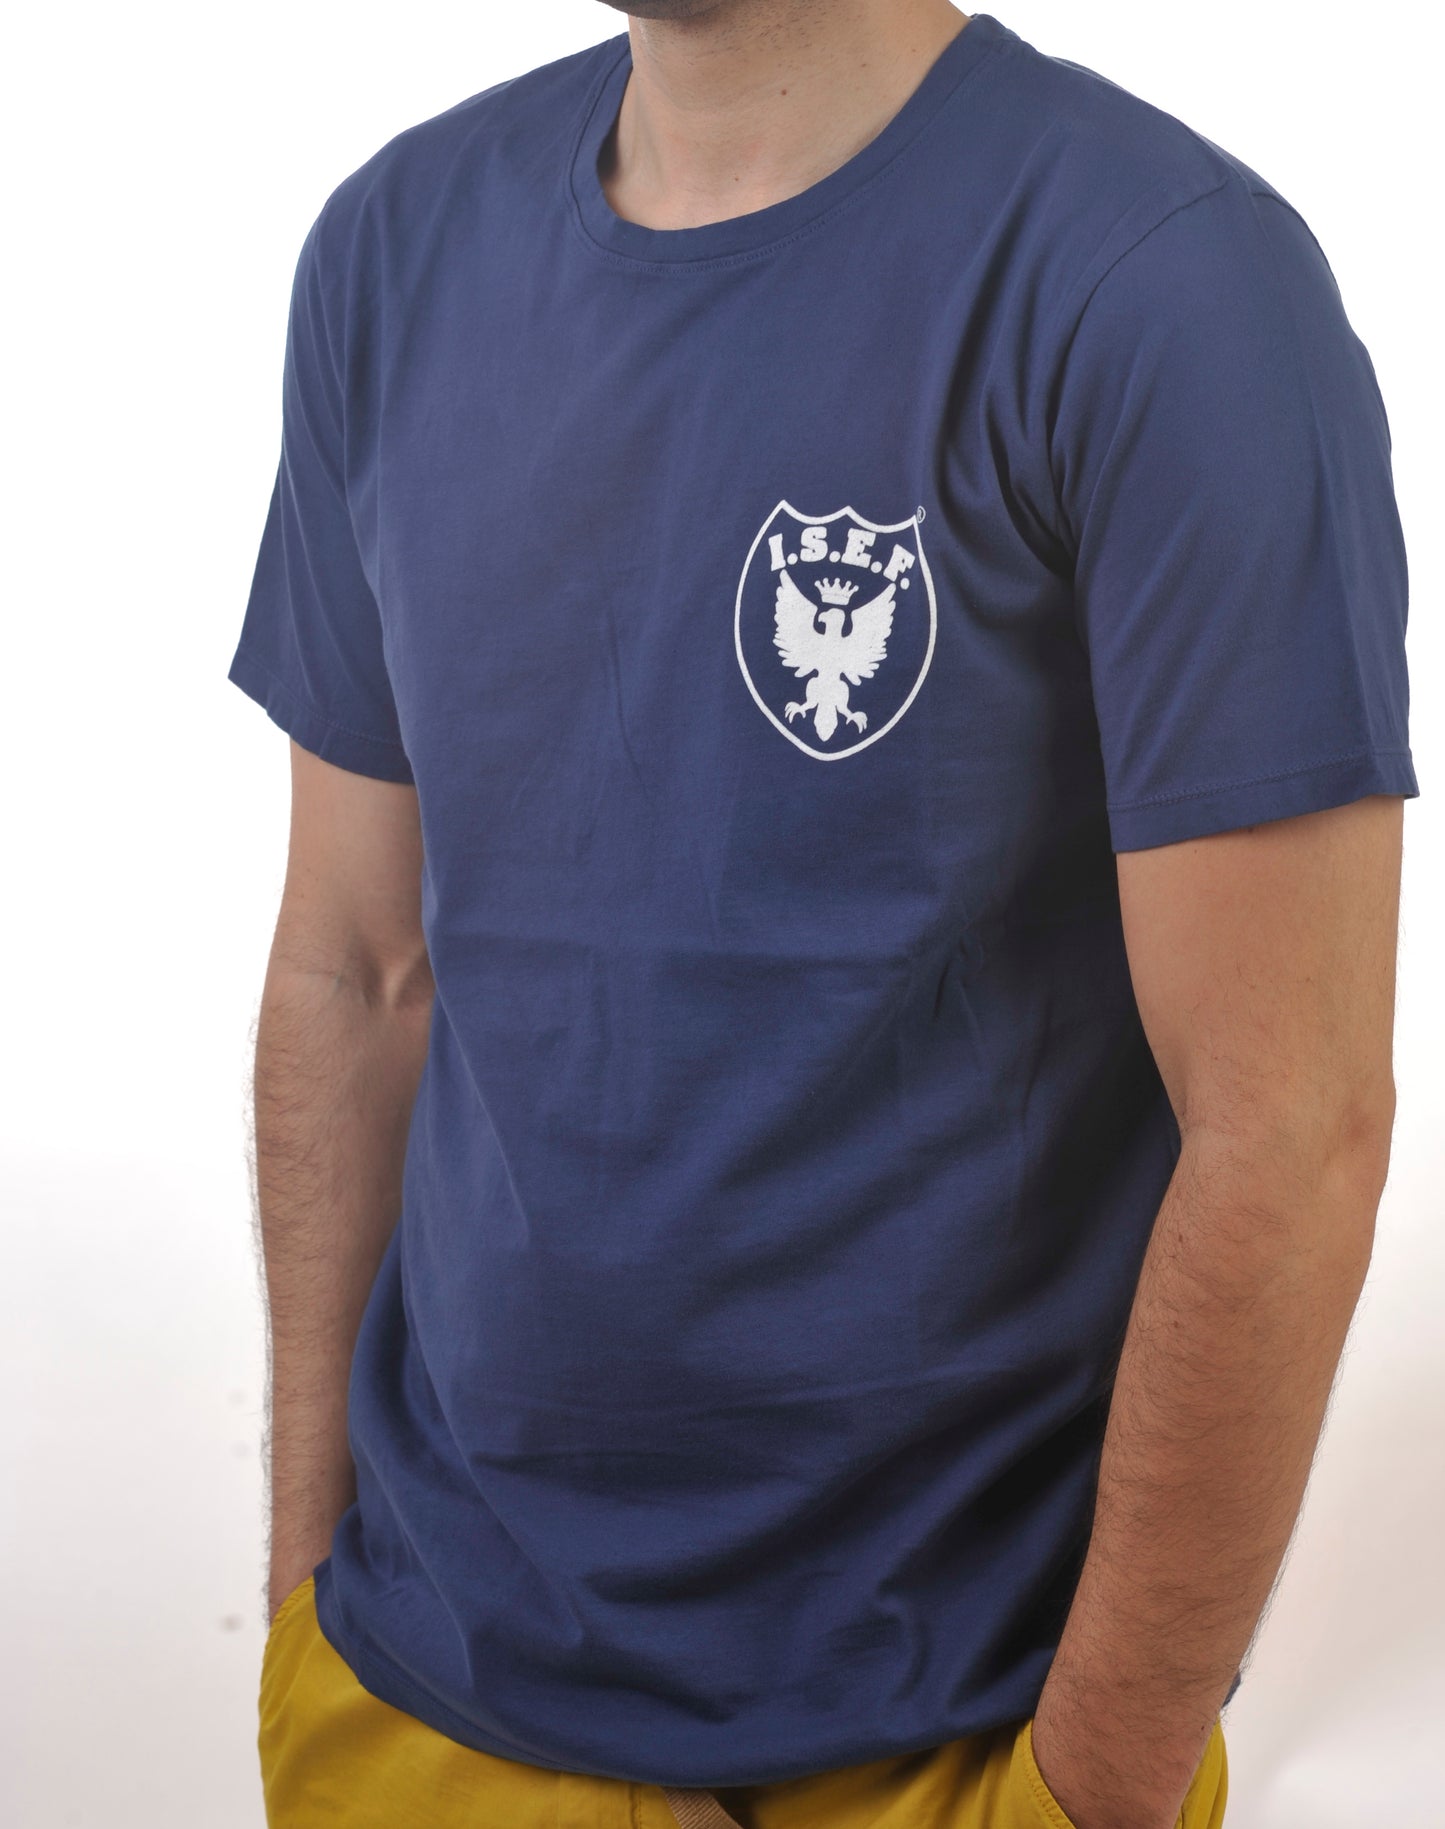 ISEF1952 - Blue - L'Aquila T-Shirt